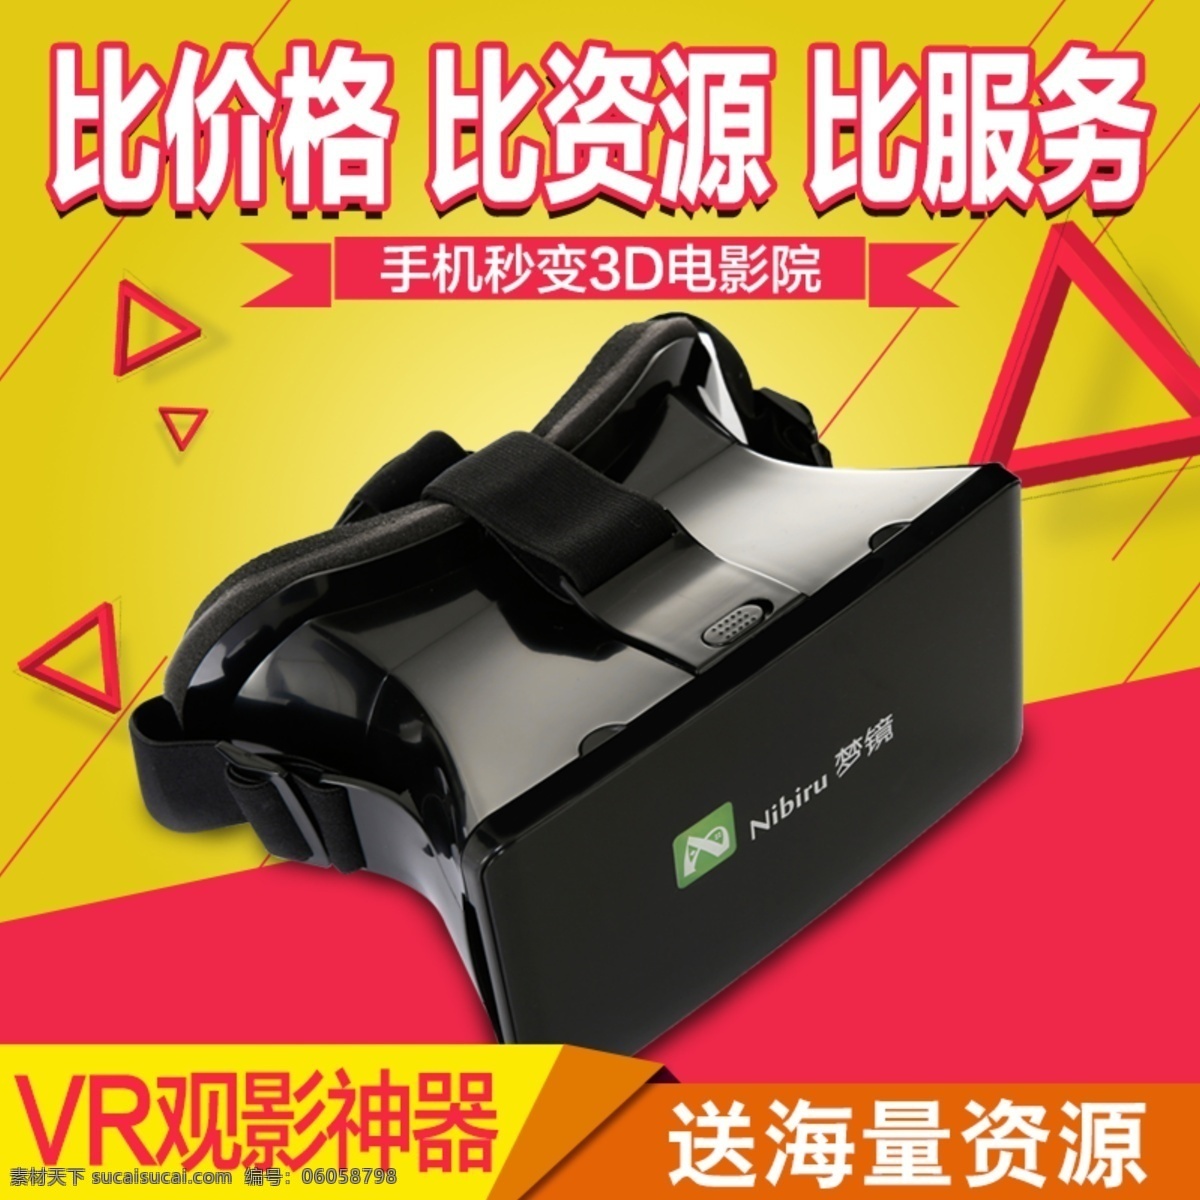 vr 3d 虚拟现实 眼镜 原创 高清 主 图 黄色